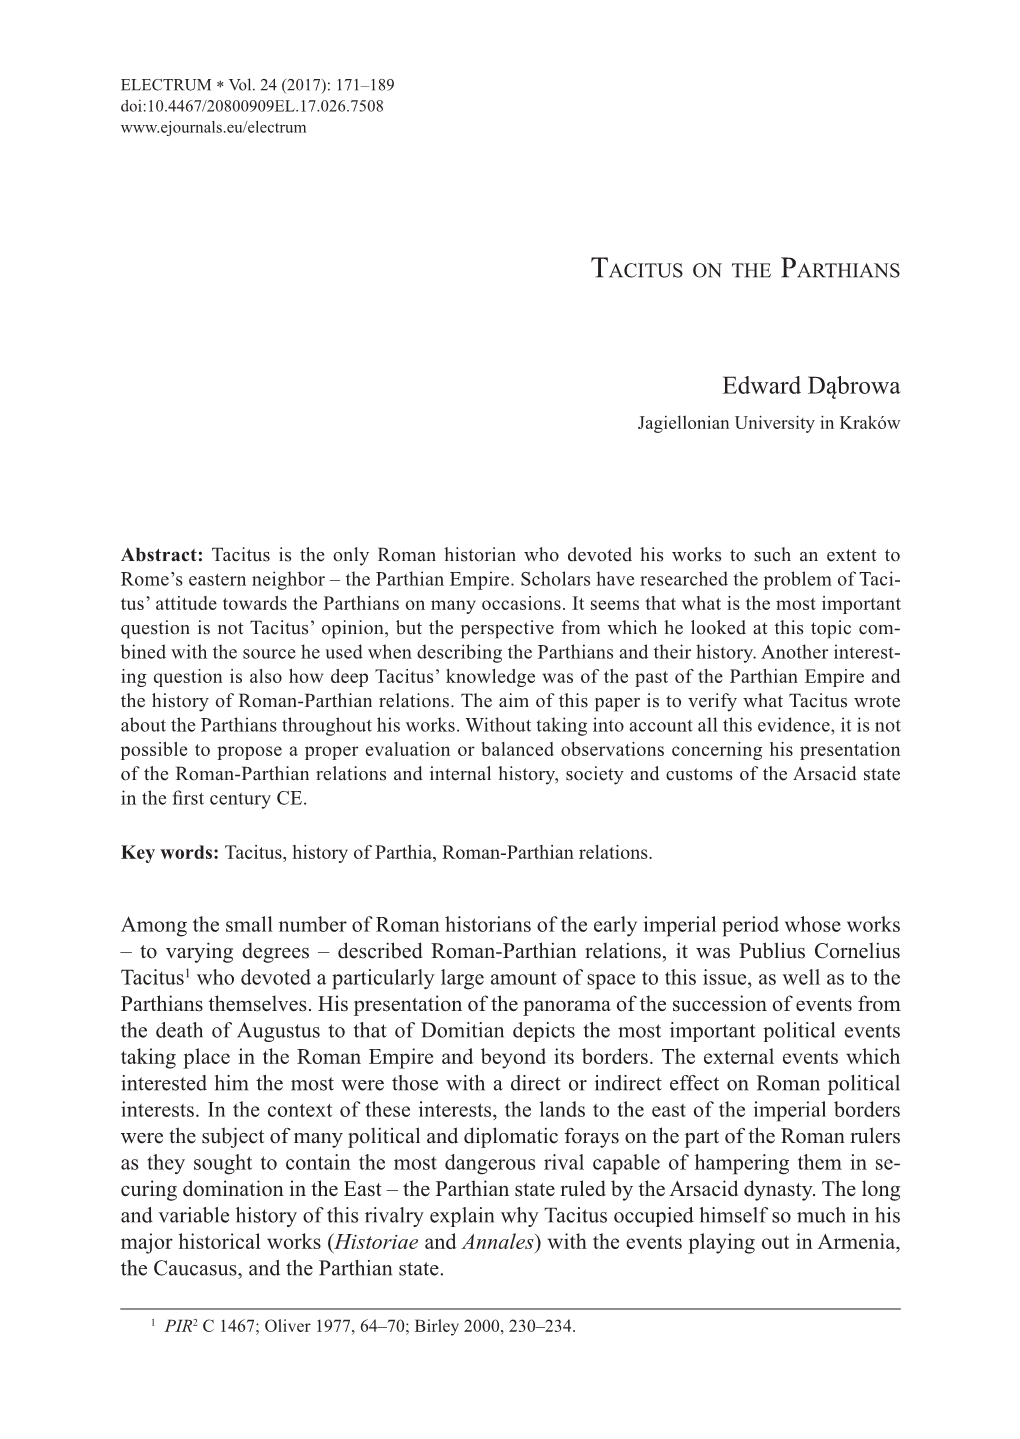 Tacitus on the Parthians